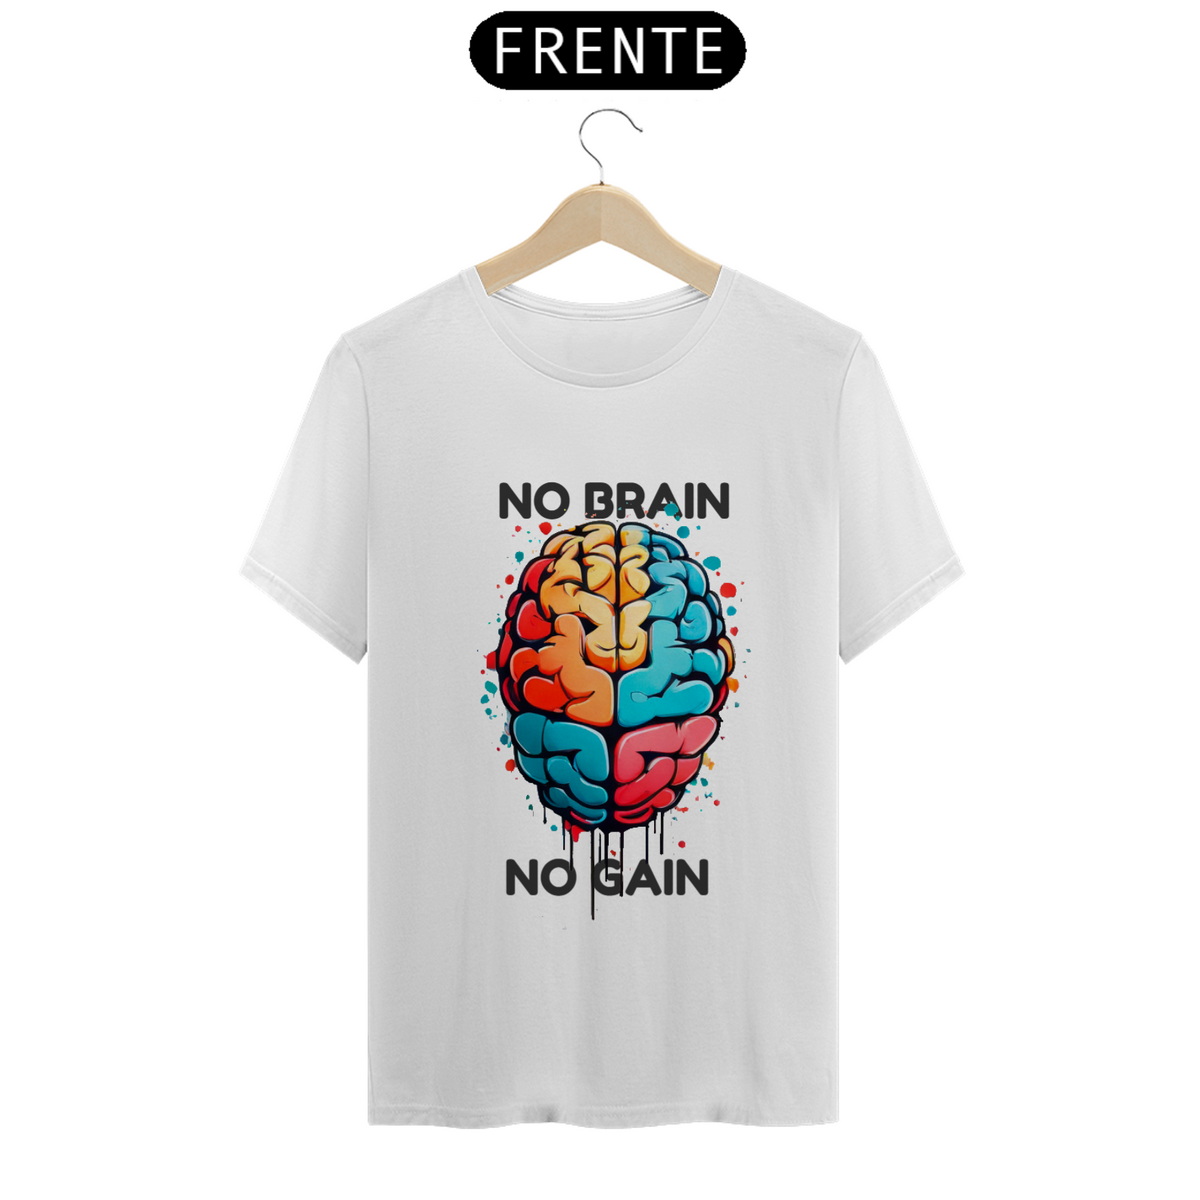 Nome do produto: No Brain No Gain #1